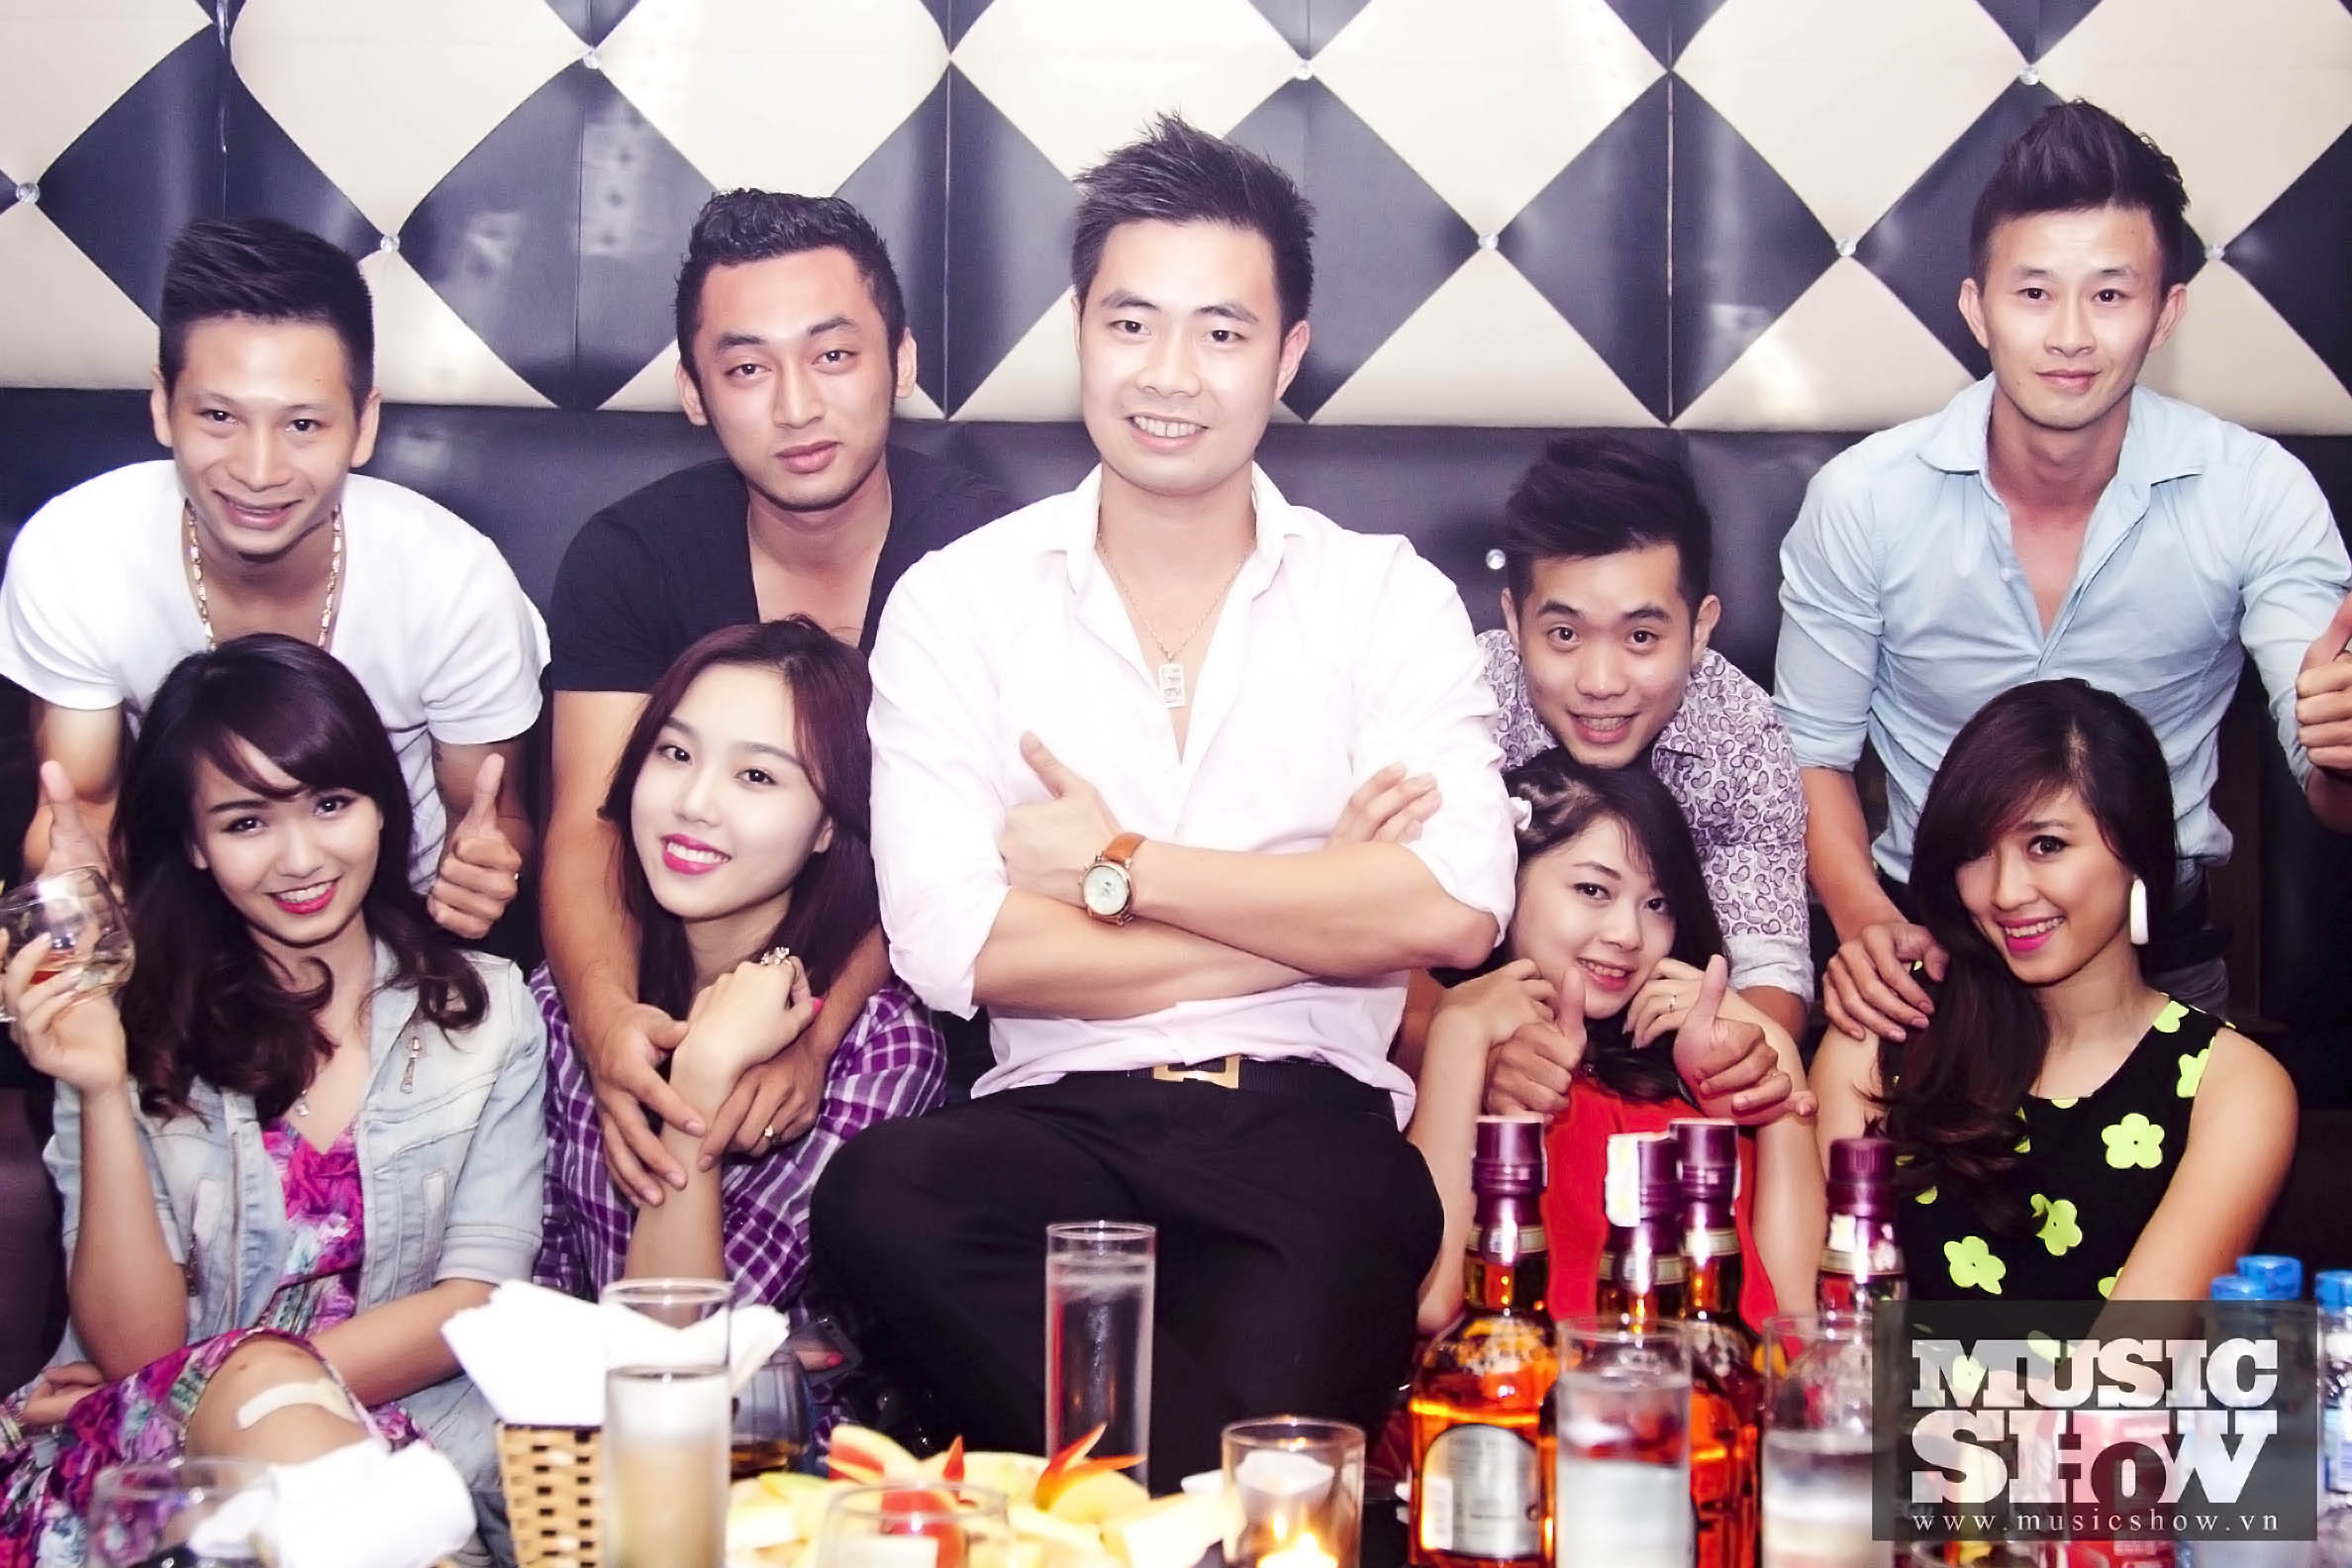 Cao Thái Sơn in Luxury Club 05/10/2013